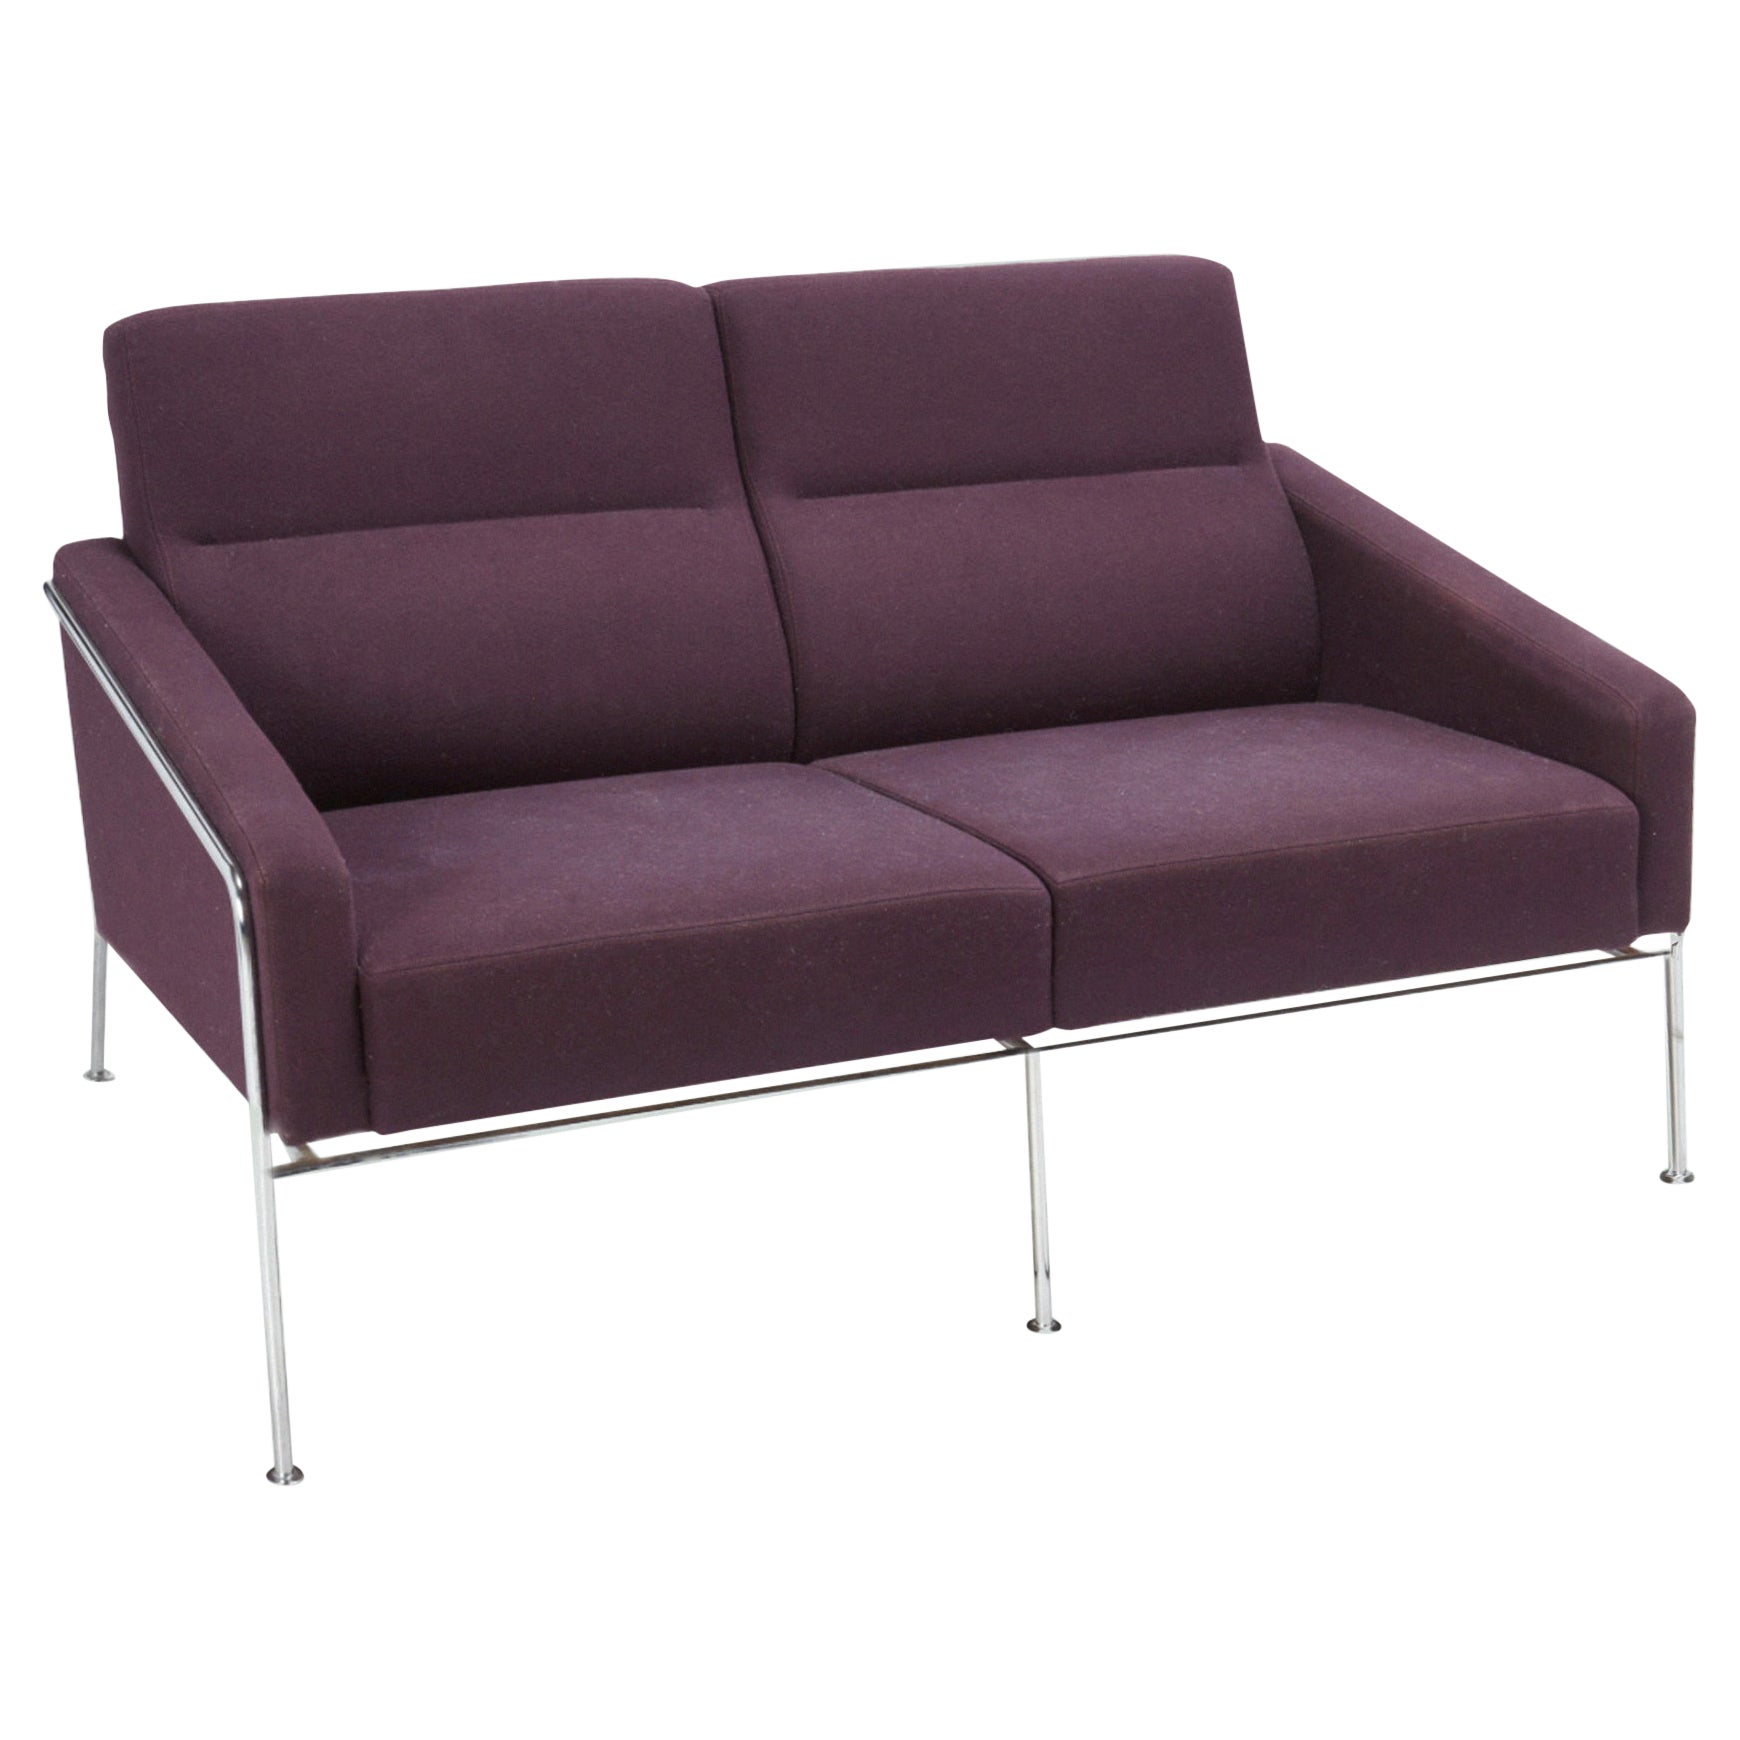 Arne Jacobsen Violet Wool Chrome Steel 3300/2 "Airport" Sofa for Fritz Hansen For Sale